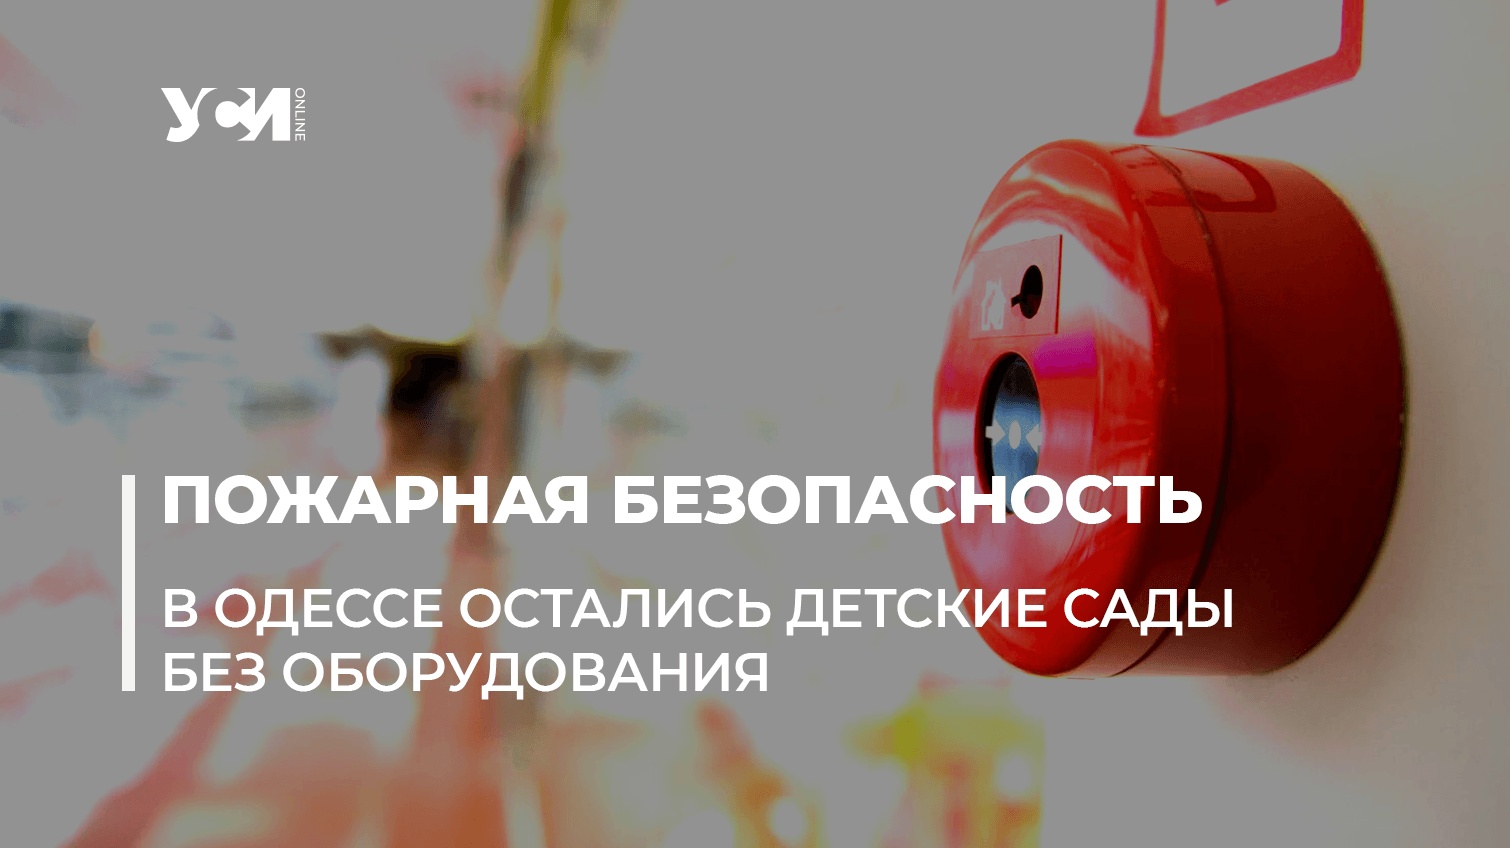 4 детских сада в Одессе остаются без пожарной сигнализации (документ) «фото»